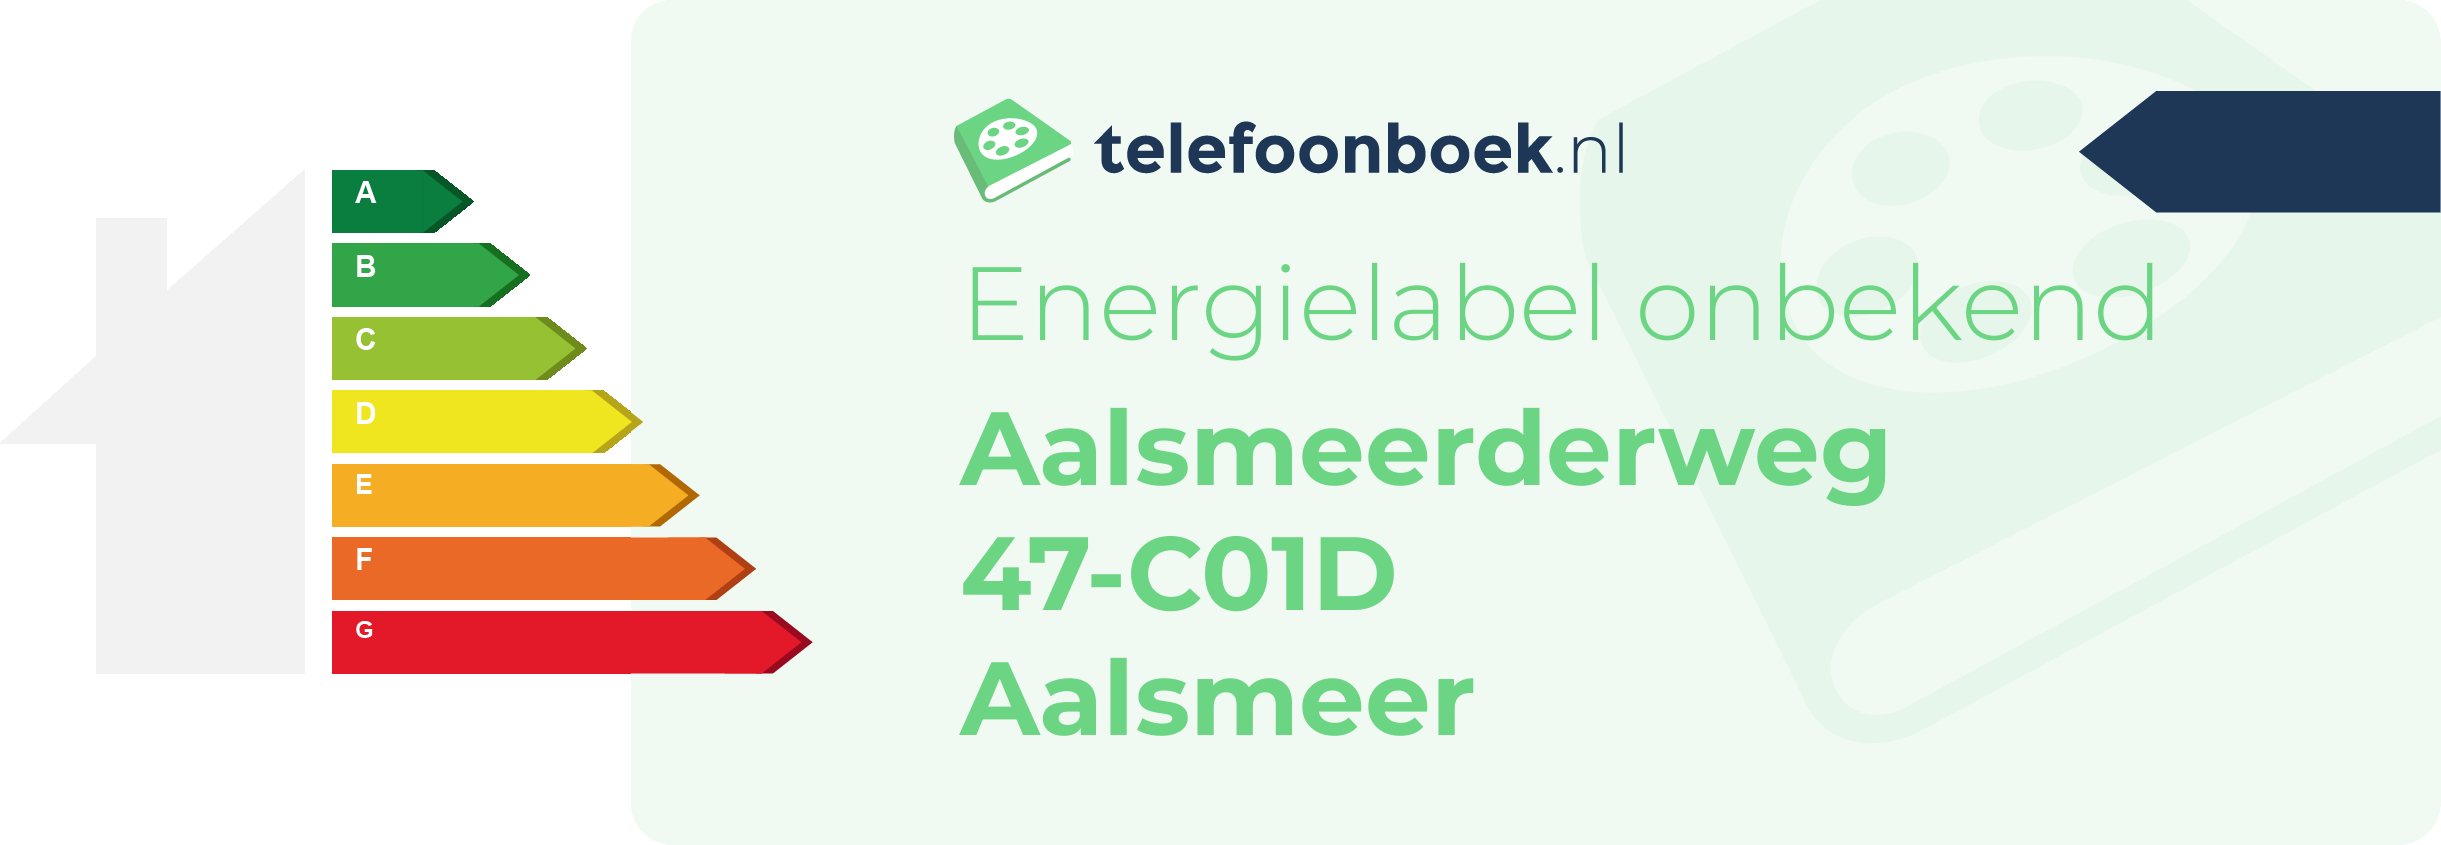 Energielabel Aalsmeerderweg 47-C01D Aalsmeer